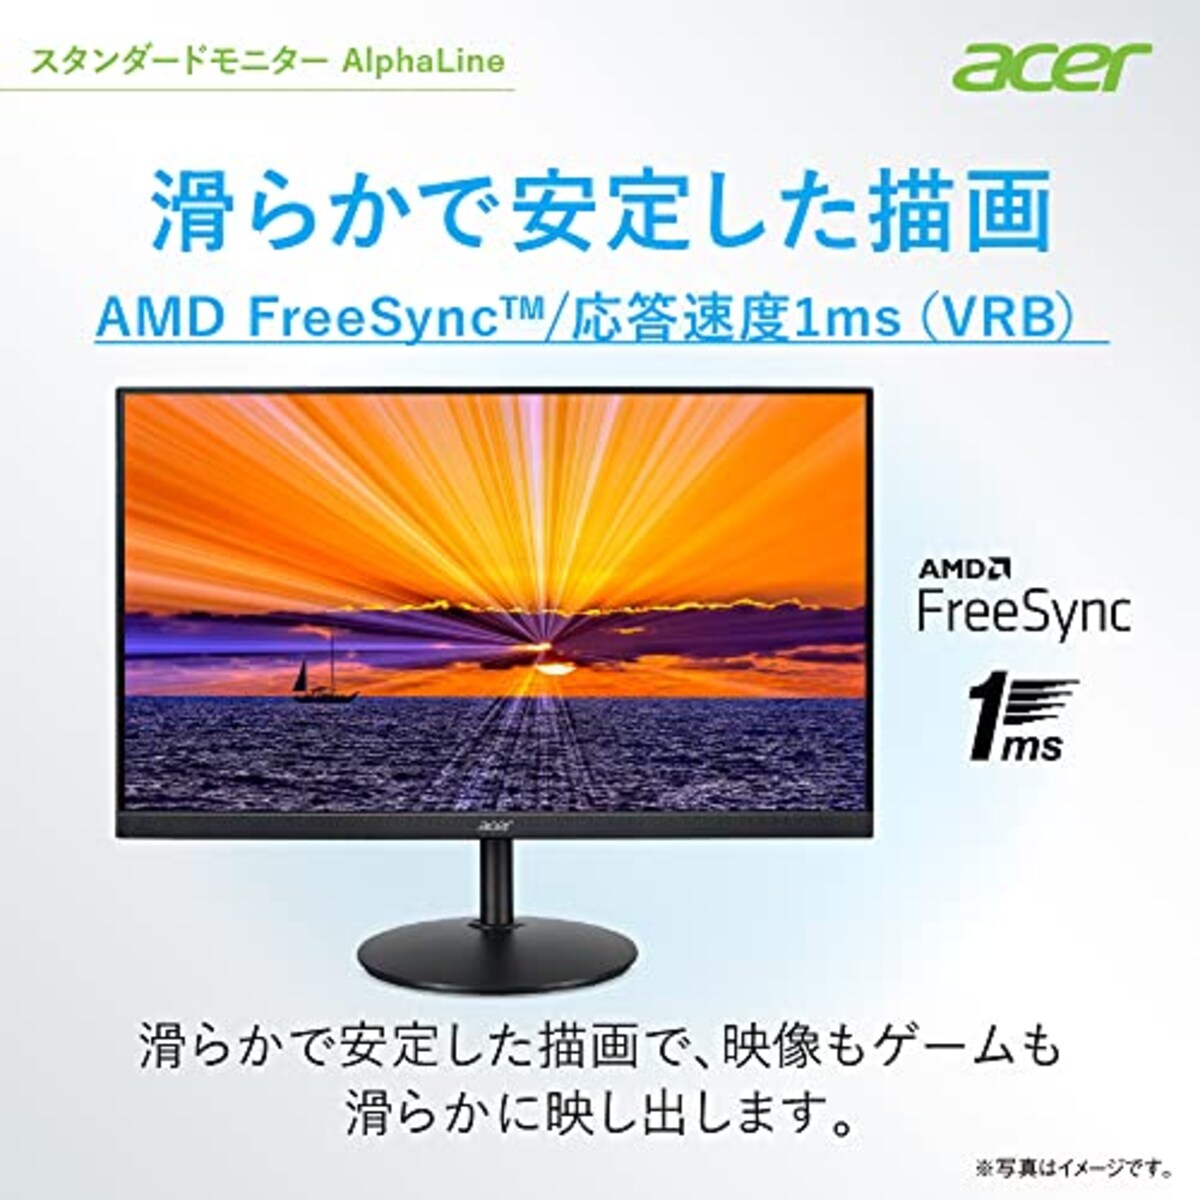  Acer モニター AlphaLine CBA242YAbmirx 23.8インチ VA 非光沢 フルHD 75Hz/1ms (VRB)HDMI ミニD-Sub 15 VESAマウント対応 スピーカー内蔵 高さ調整 チルト スイベル ピボッド機能 広い視野角178° フリッカーレス ブルーライト軽減 フレームレスデザイン画像5 